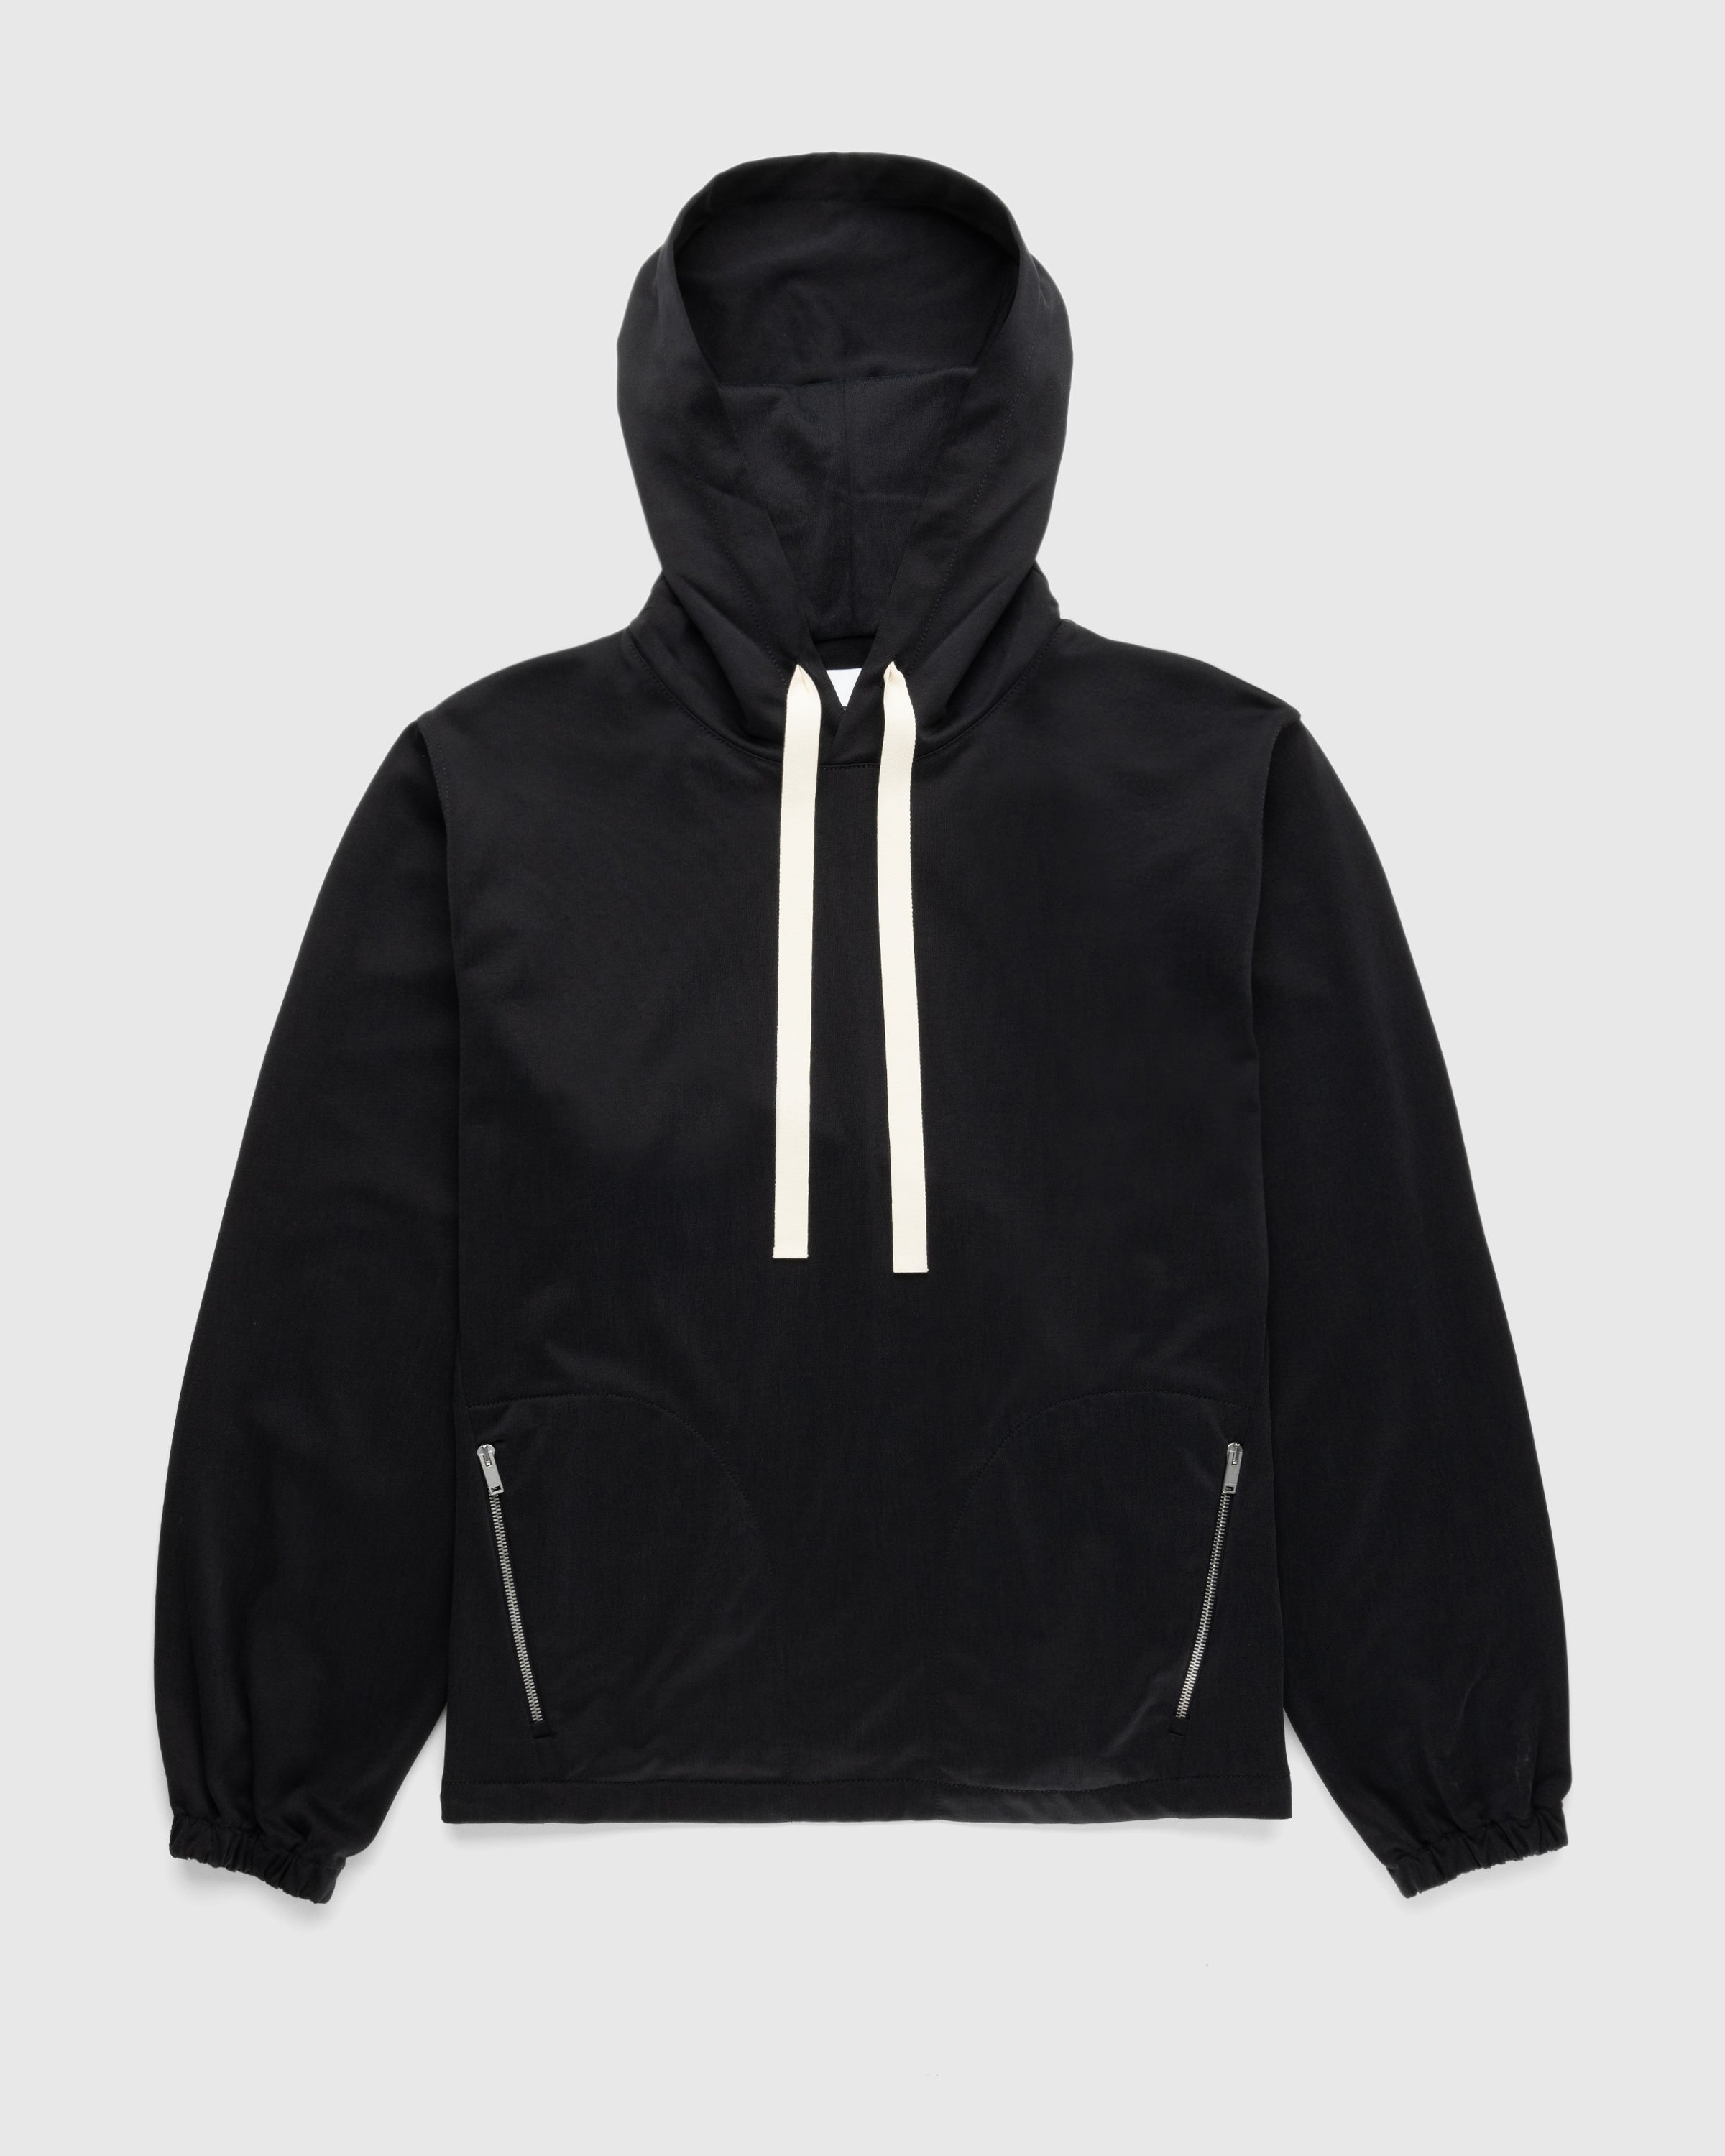 Jil Sander - Hooded Sweatshirt Black - Clothing - Black - Image 1